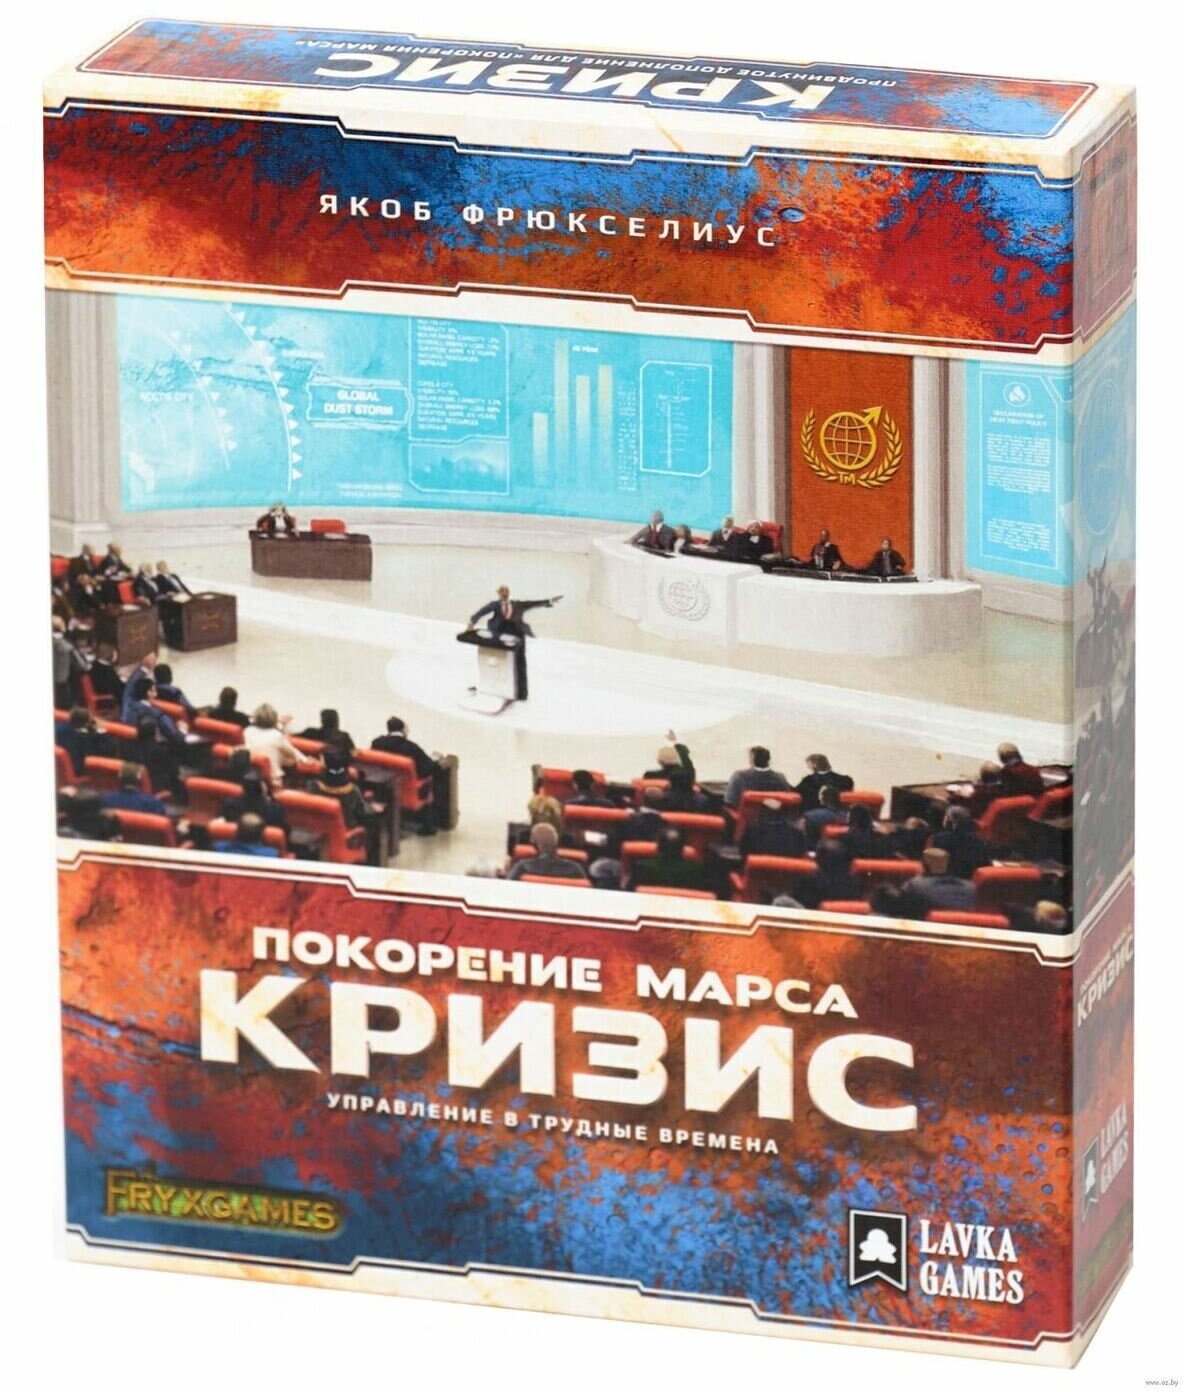 Lavka Games Настольная игра "Покорение марса. Кризис" дополнение - фото №19